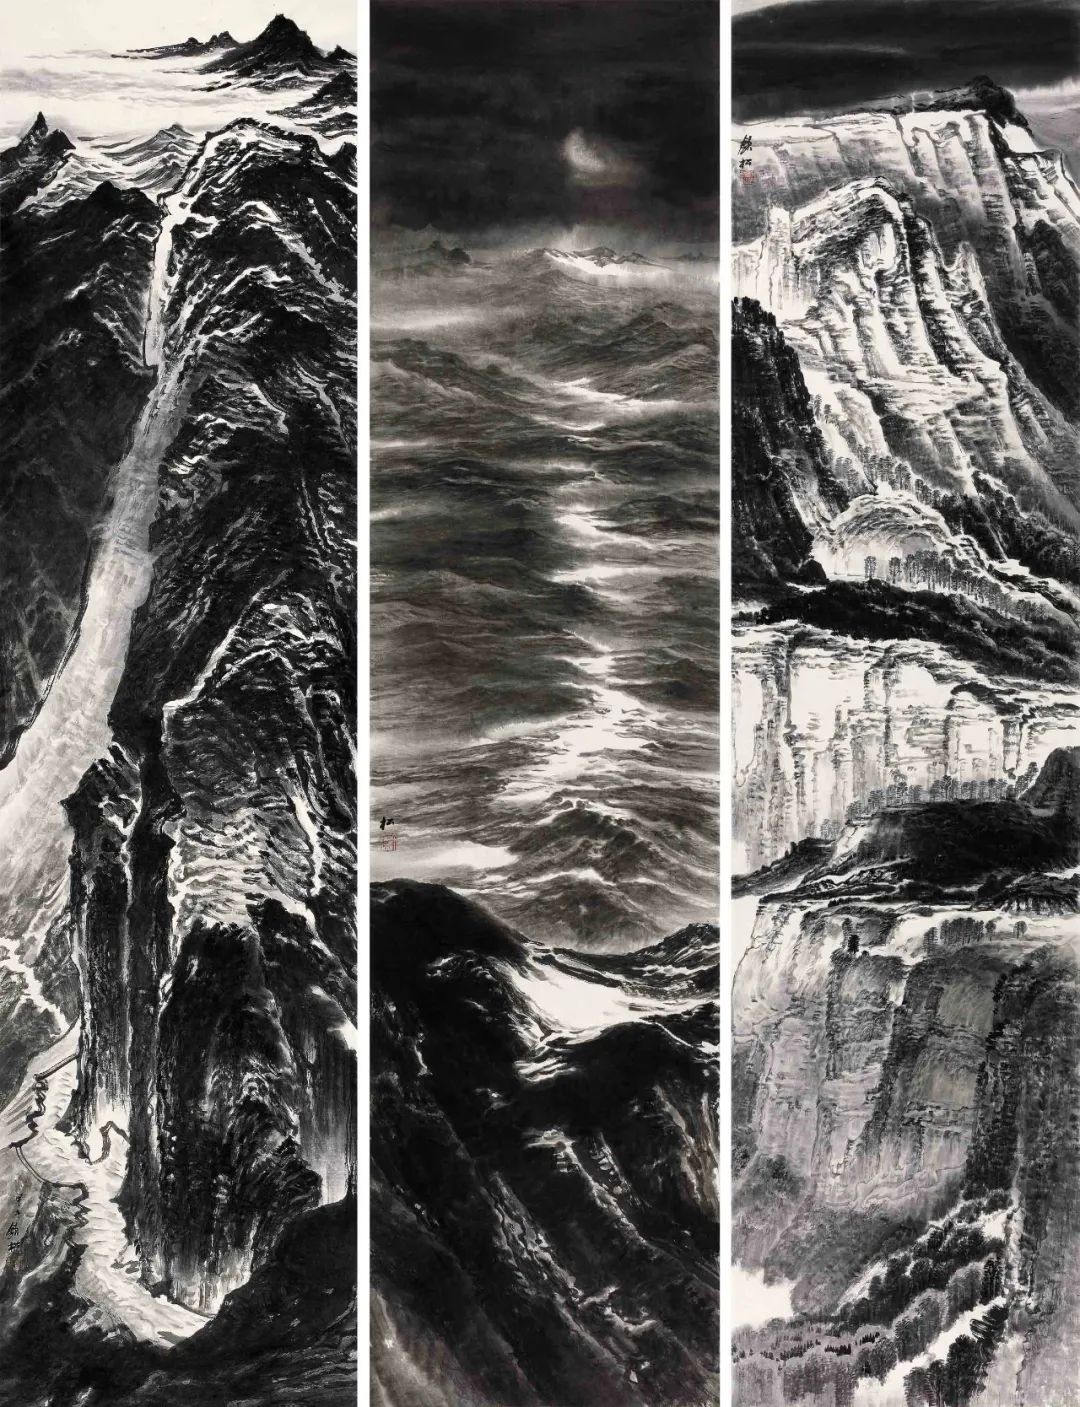 許欽松 山水系列 248cm×62cm×3  紙本水墨 2014年